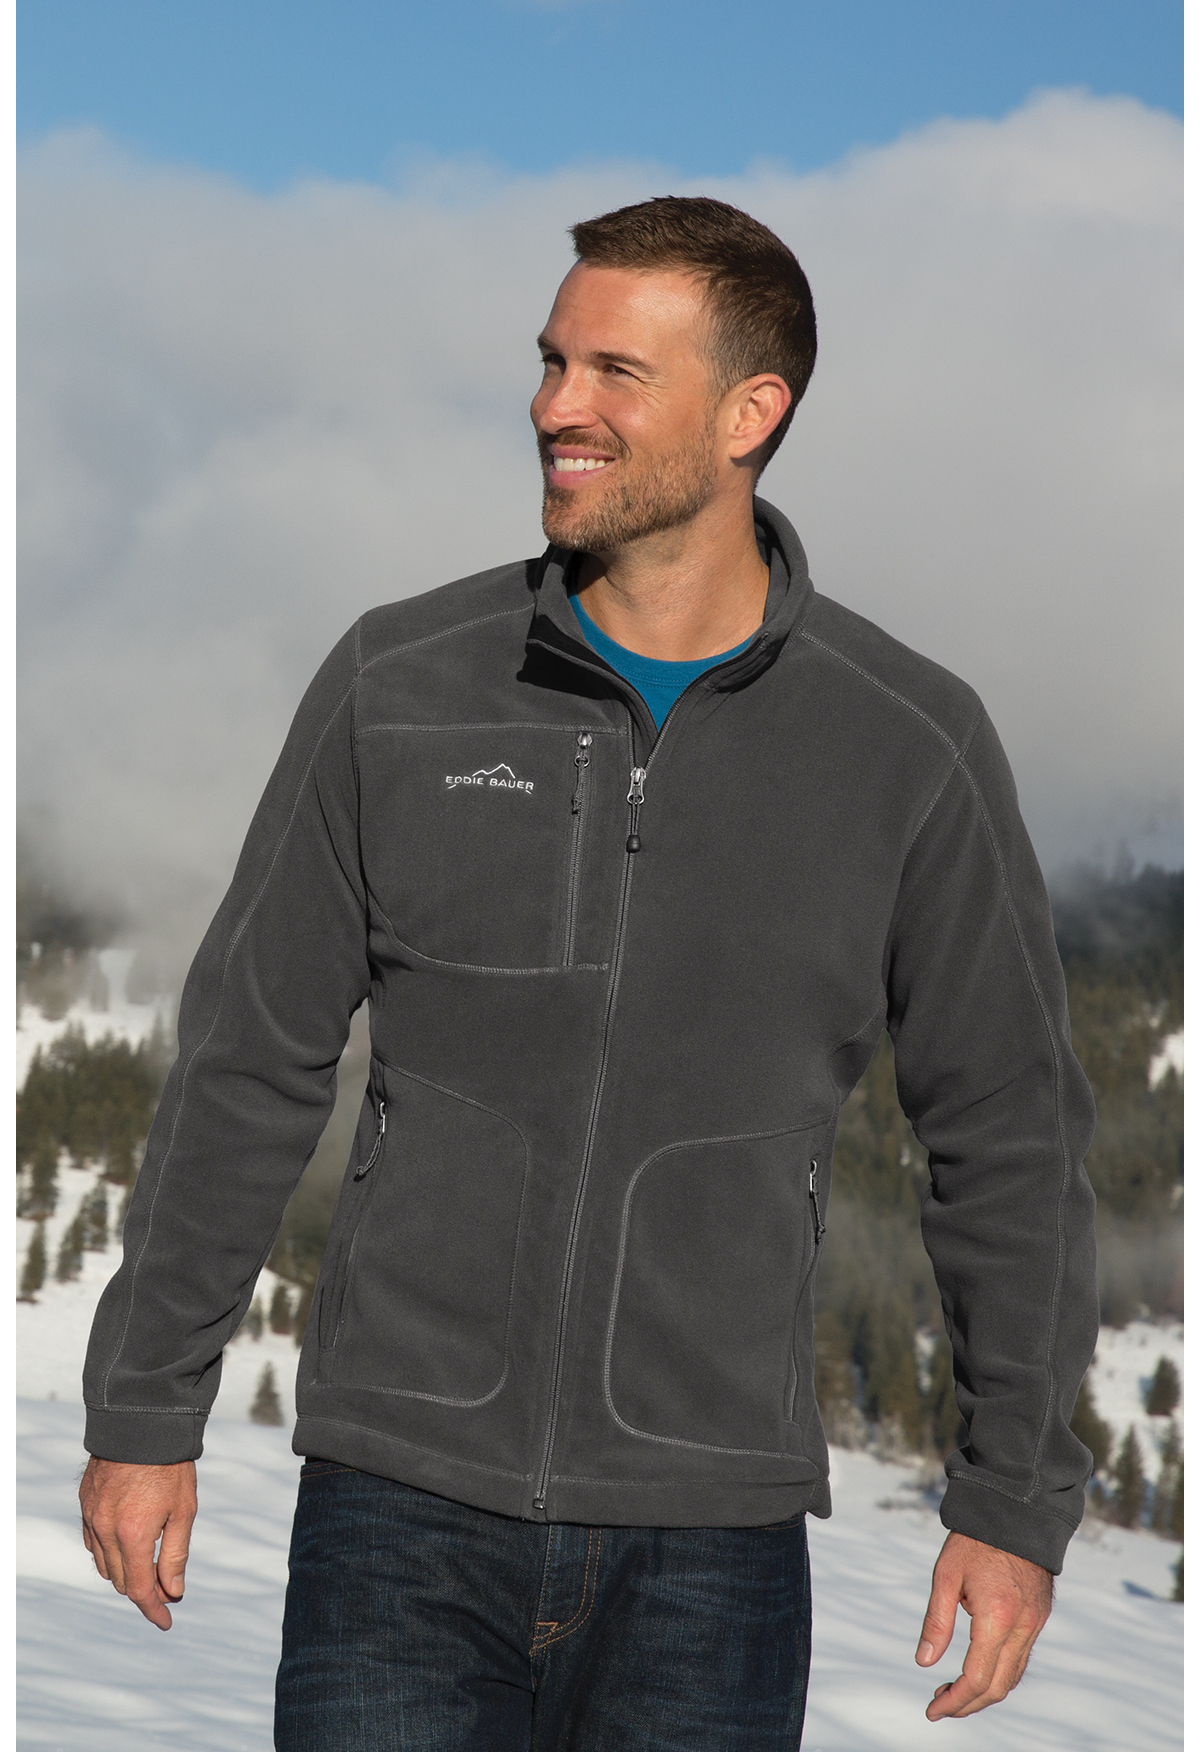 Eddie Bauer - Wind-Resistant Full-Zip Fleece Jacket | Product | SanMar